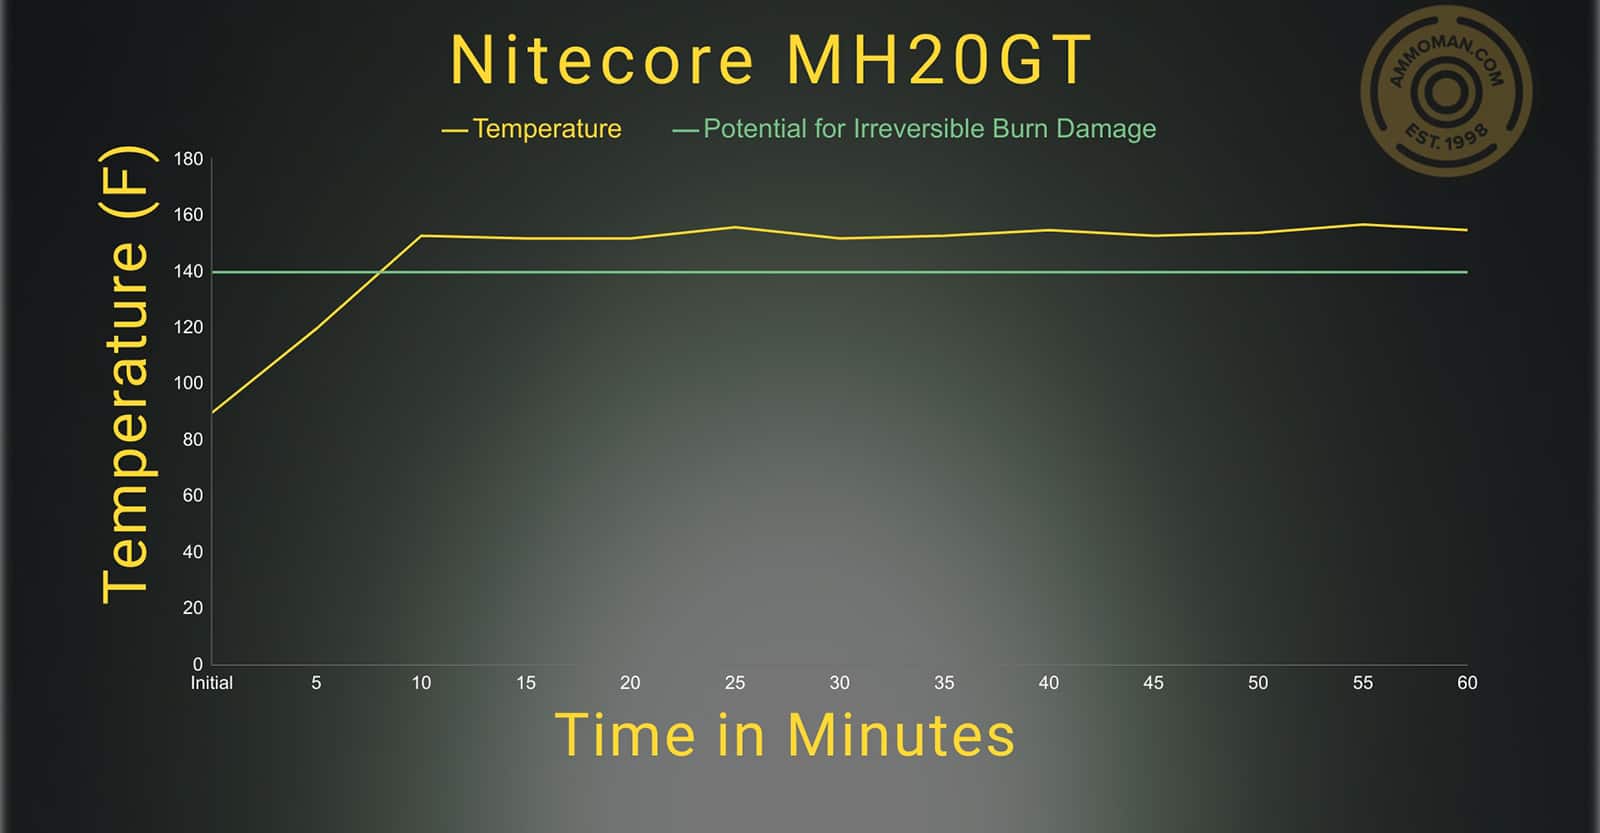 Nitecore Mh20GT temperature profile